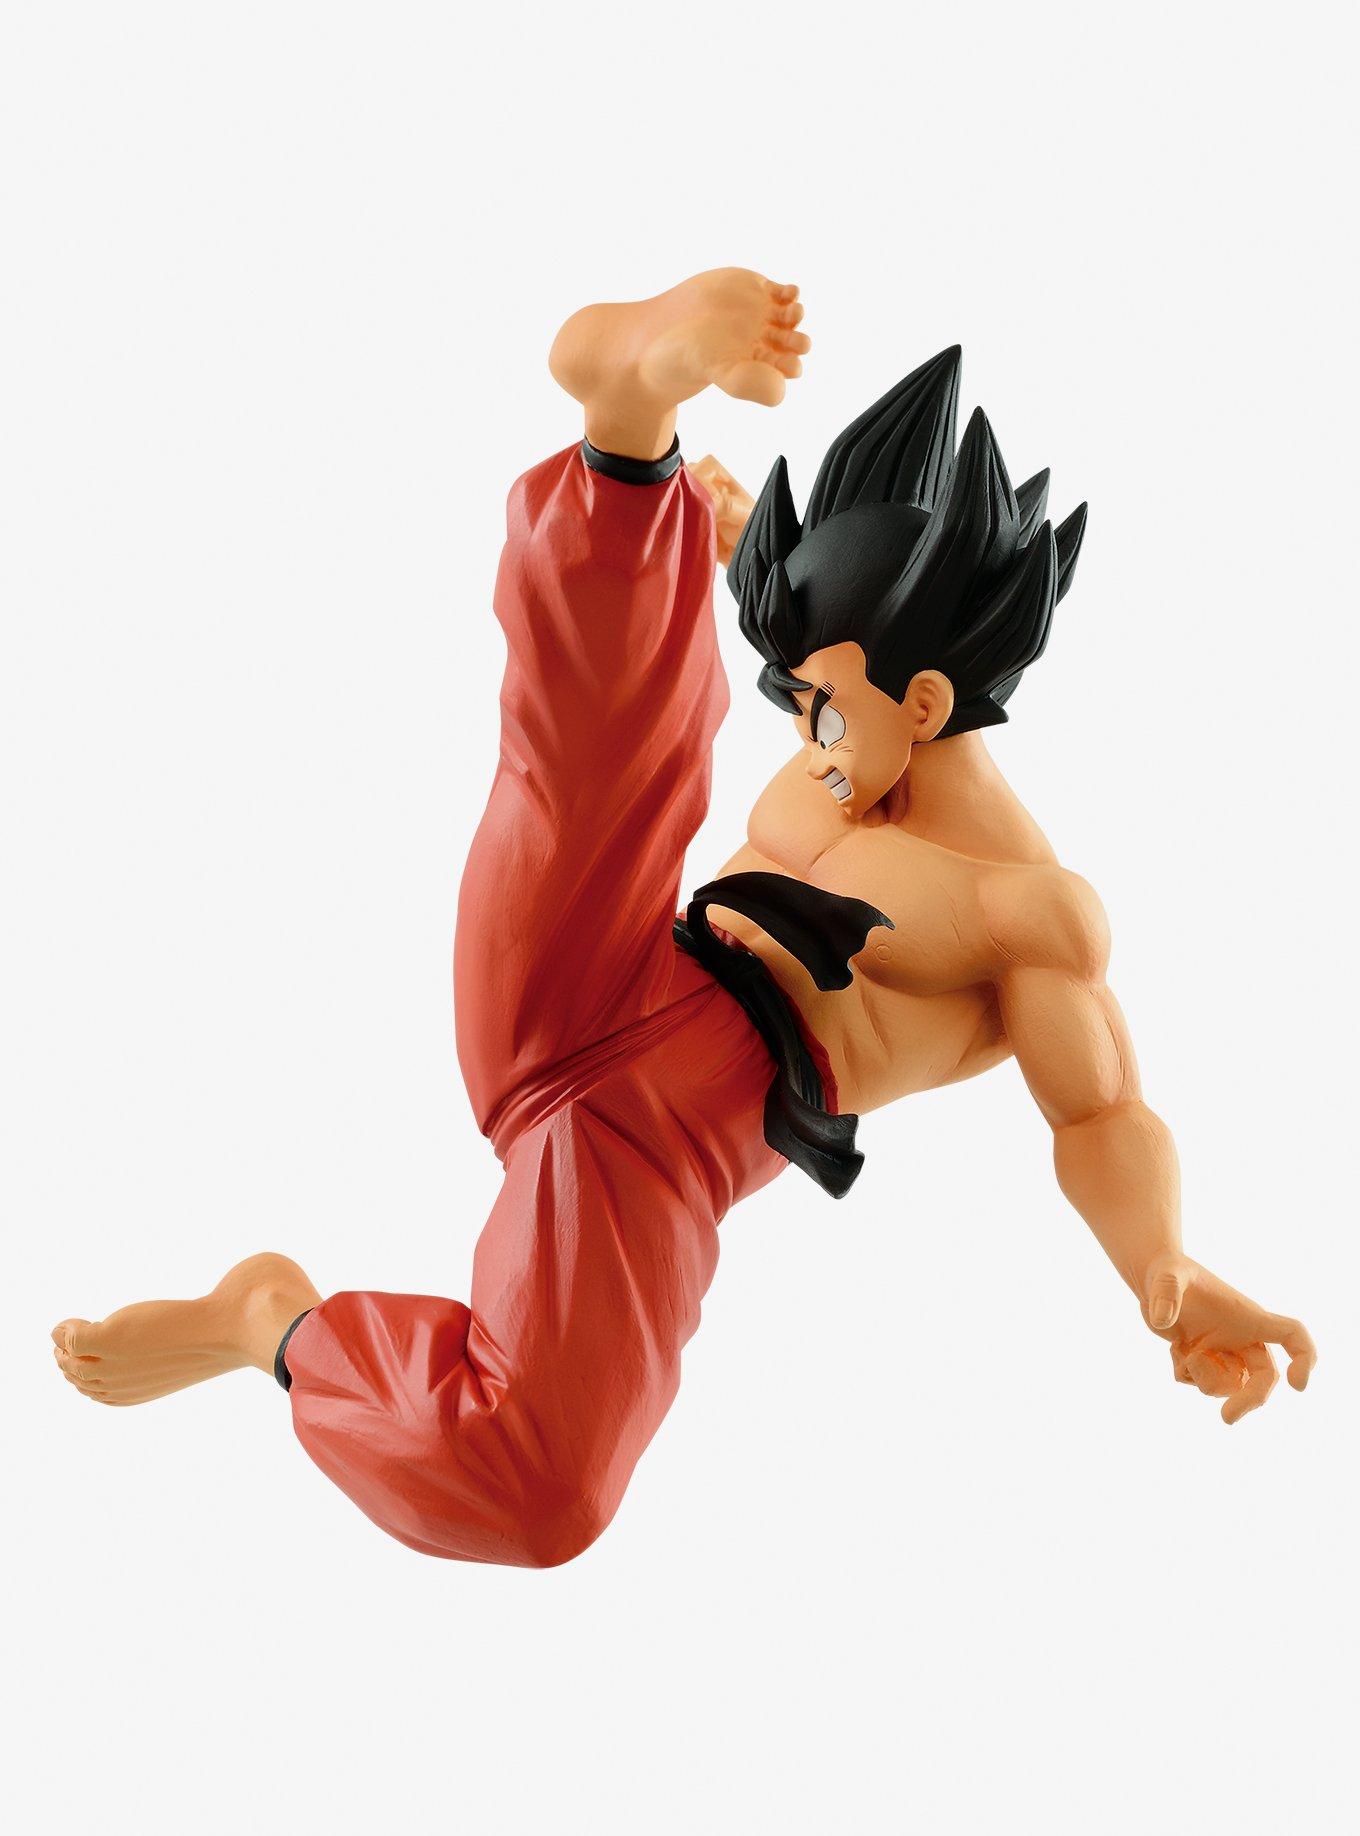  Banpresto - Dragon Ball Z - Match Makers - Son Goku